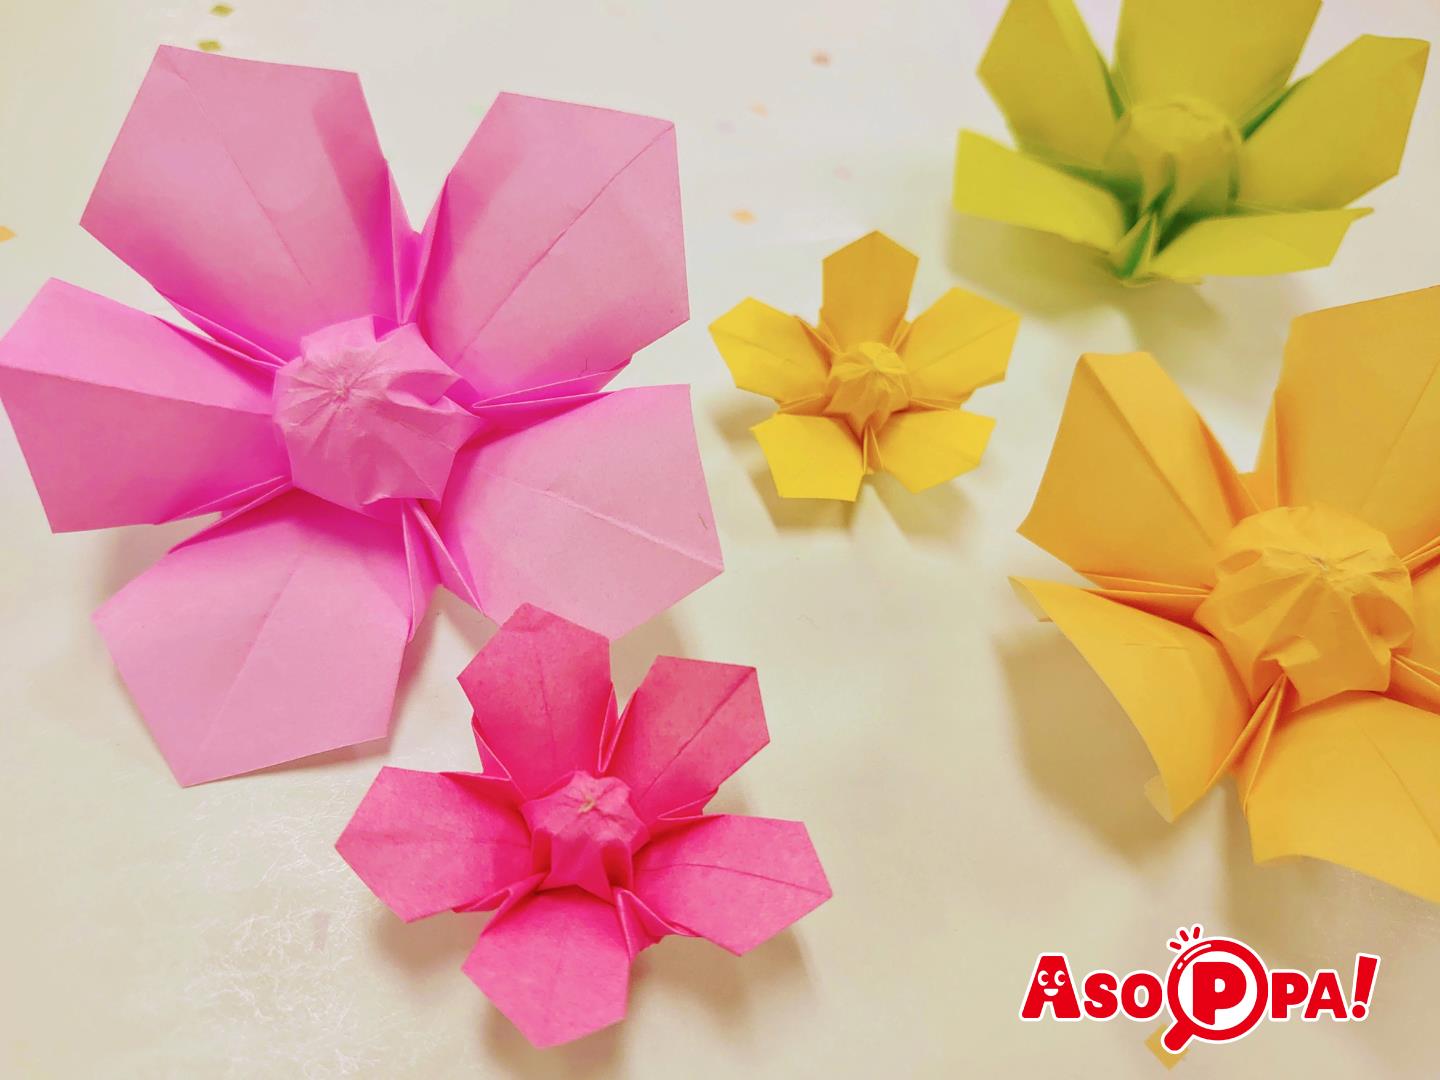 おりがみの花 花びら5枚 五弁 のオリジナル立体花 折り紙 前編 Asoppa レシピ あそっぱ